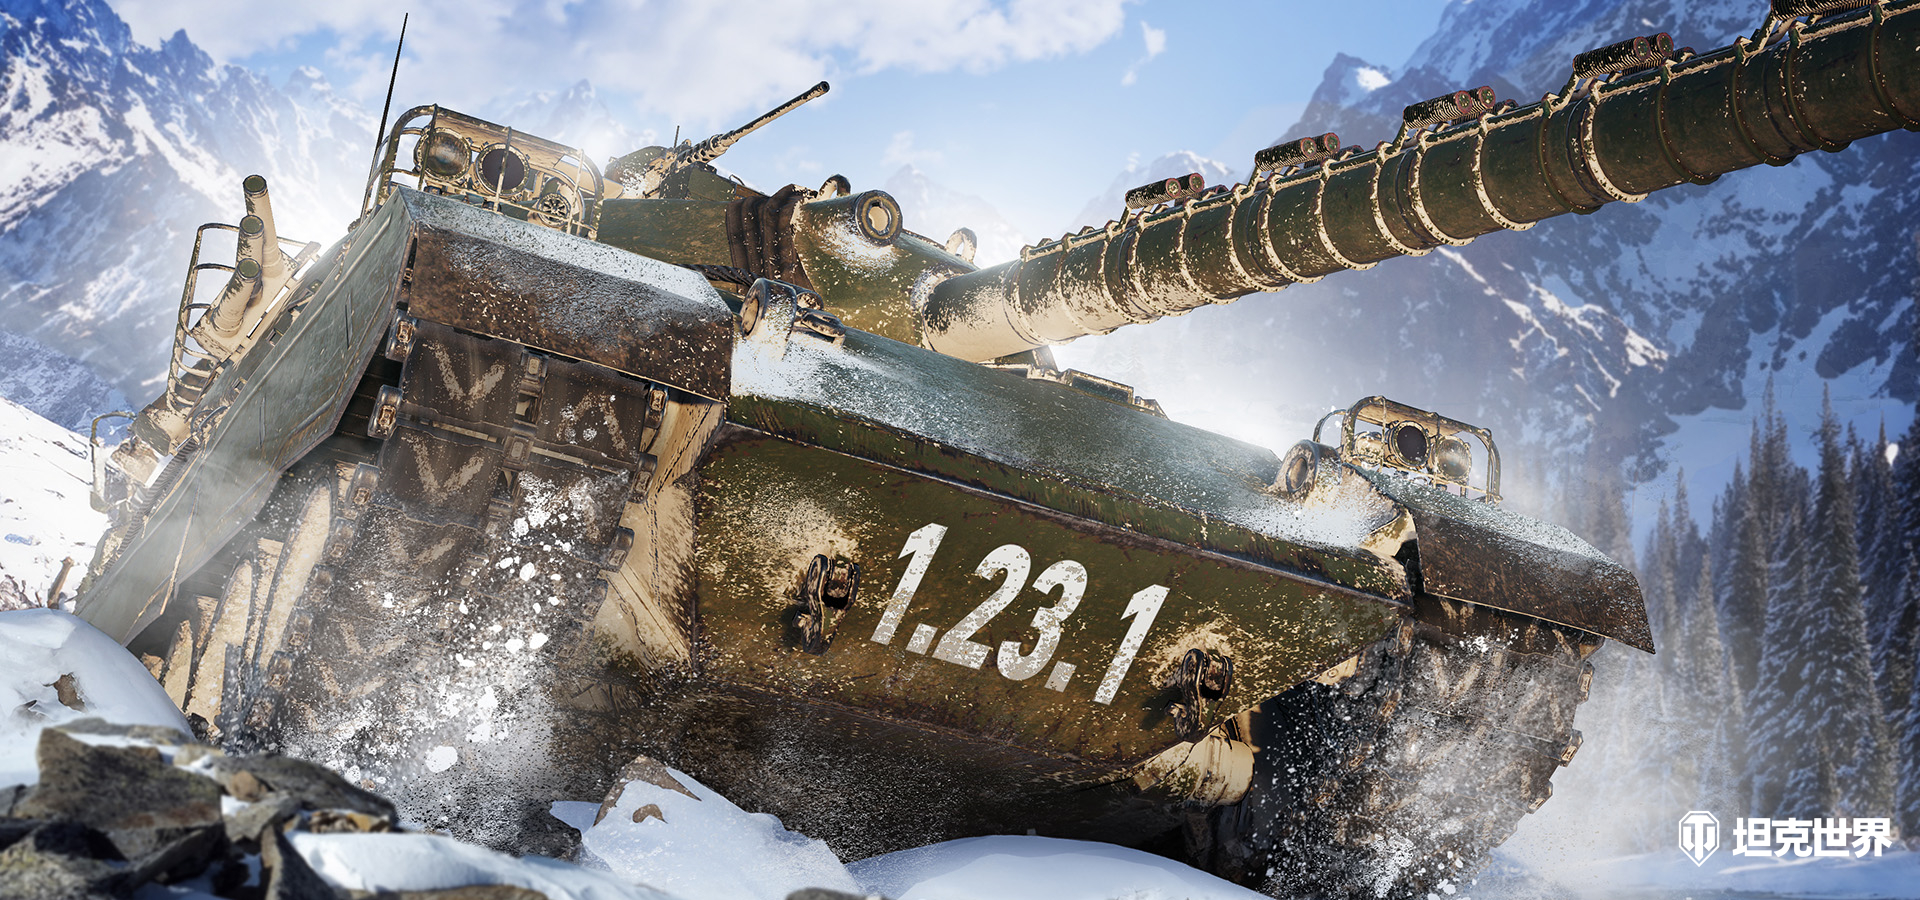 《坦克世界》1.23.1版本今日更新 绯红狮鹫赛季开启